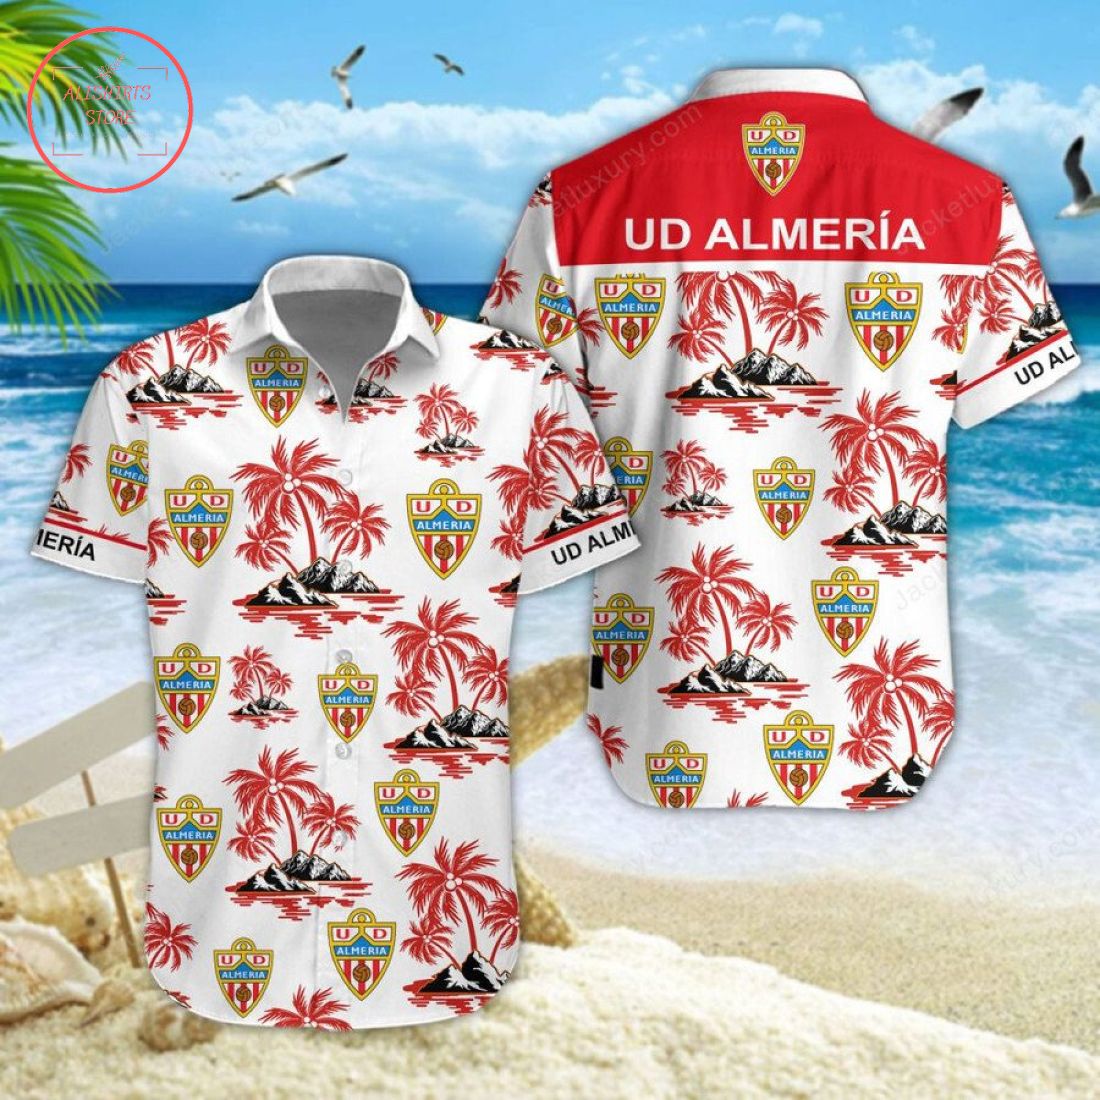 UD Almeria Hawaiian Shirt and Shorts